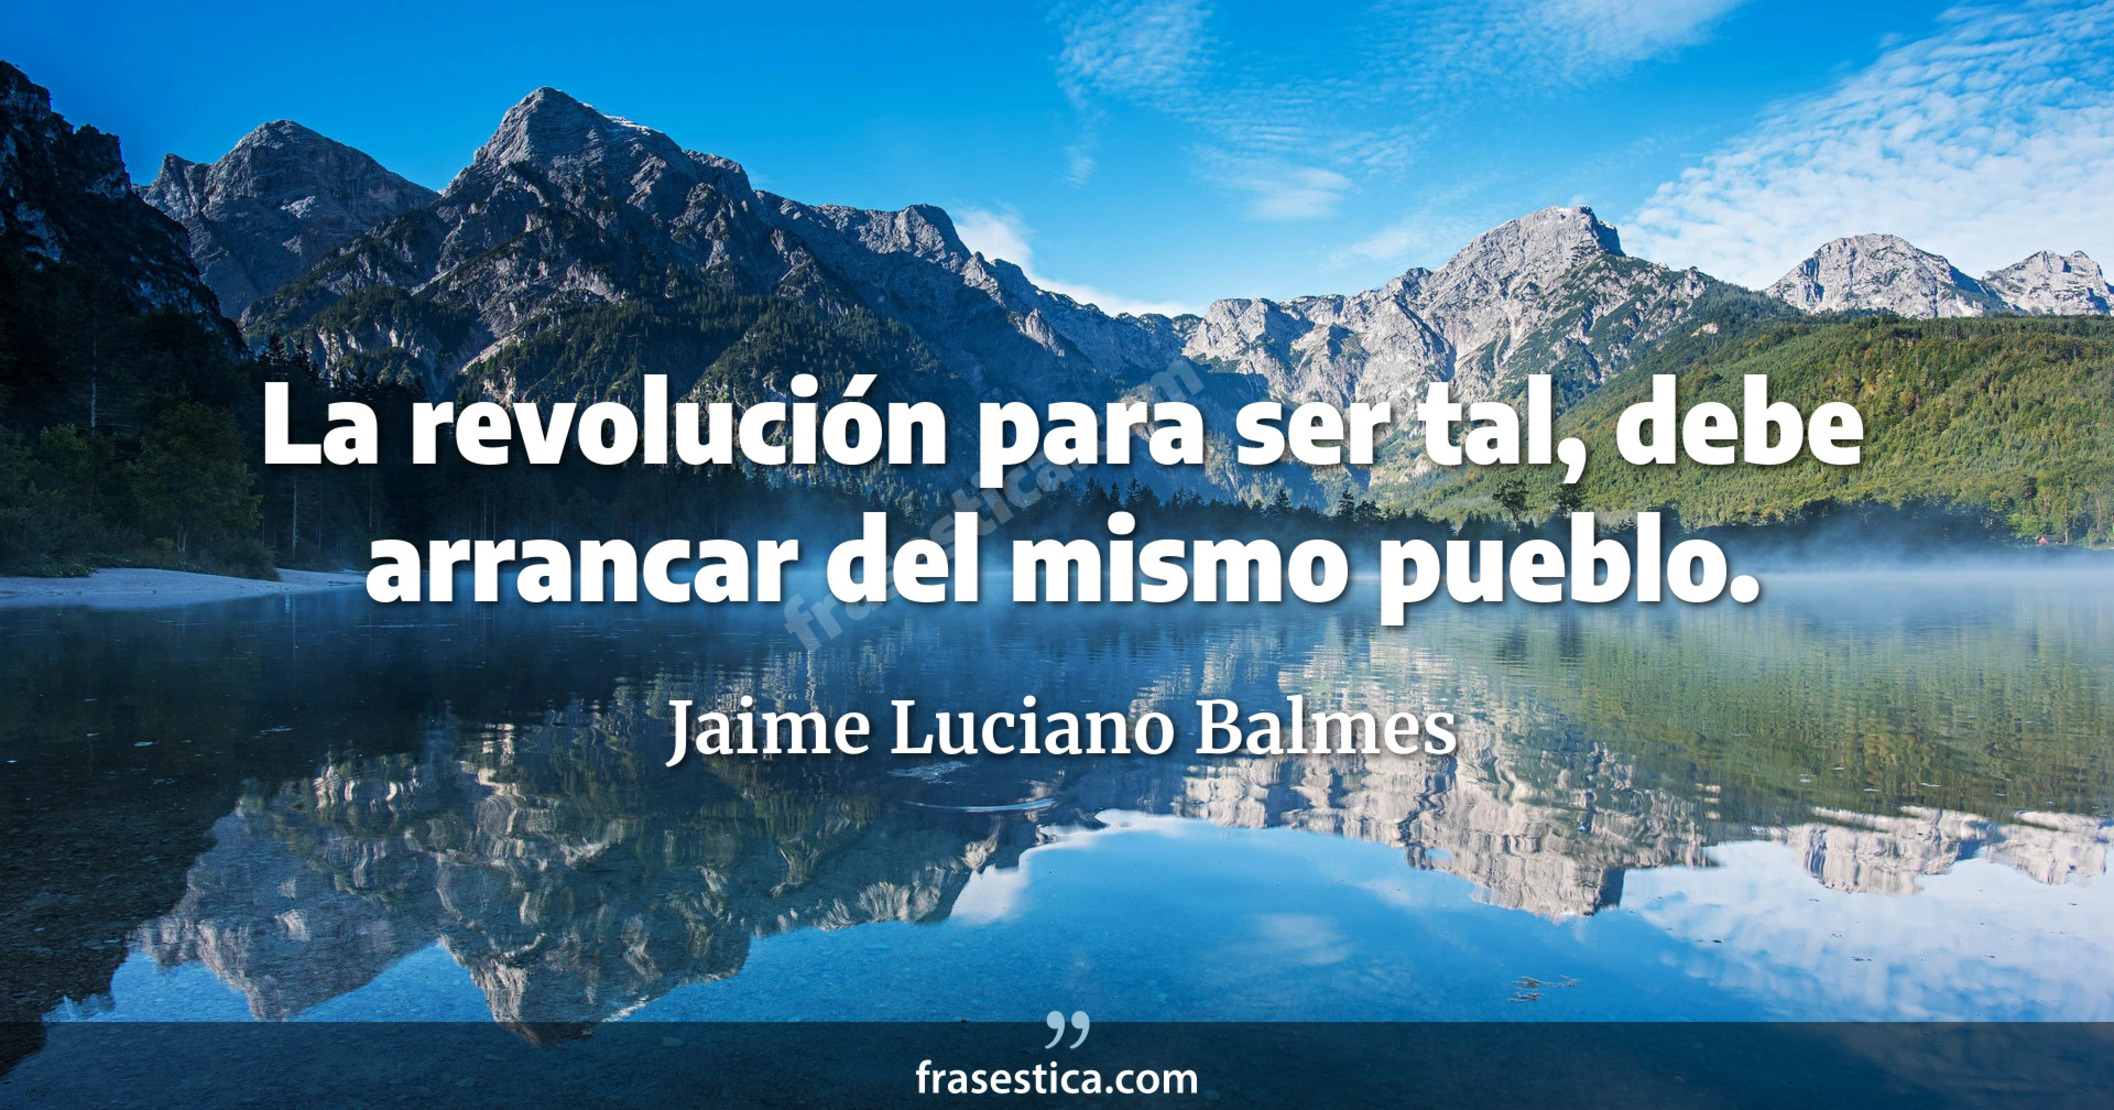 La revolución para ser tal, debe arrancar del mismo pueblo. - Jaime Luciano Balmes